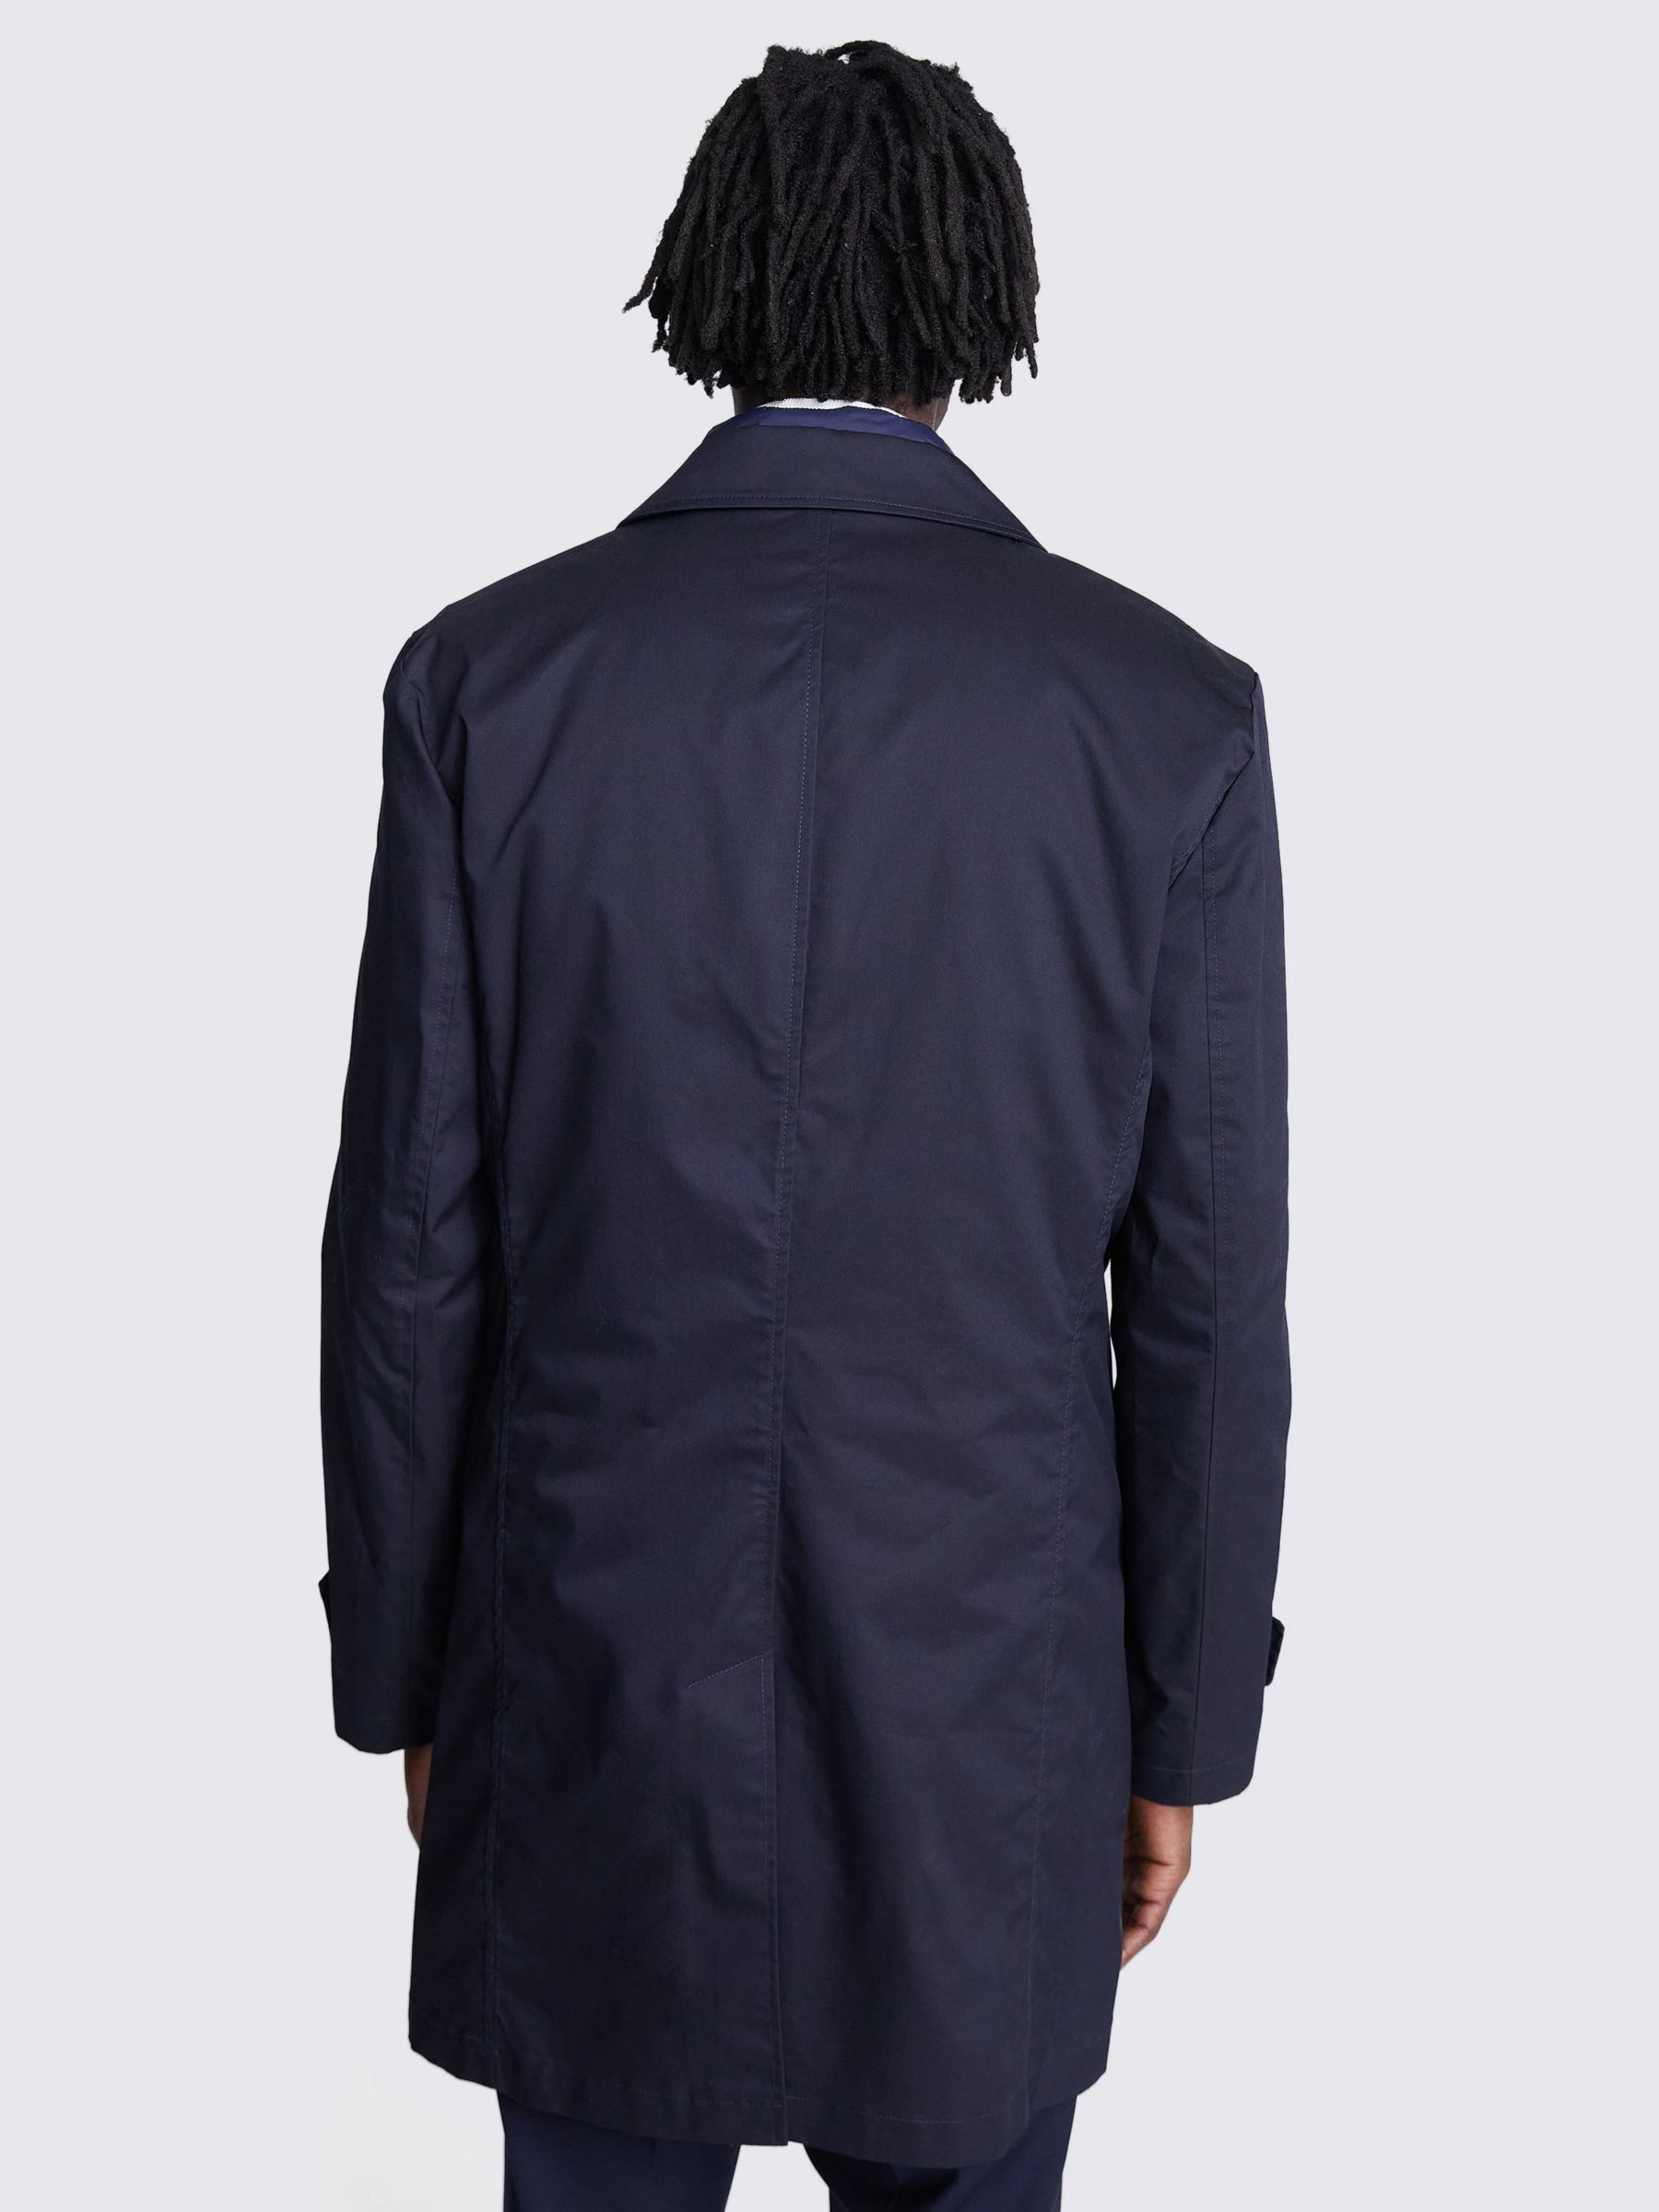 Moss Tailored Raincoat, Indigo, XS